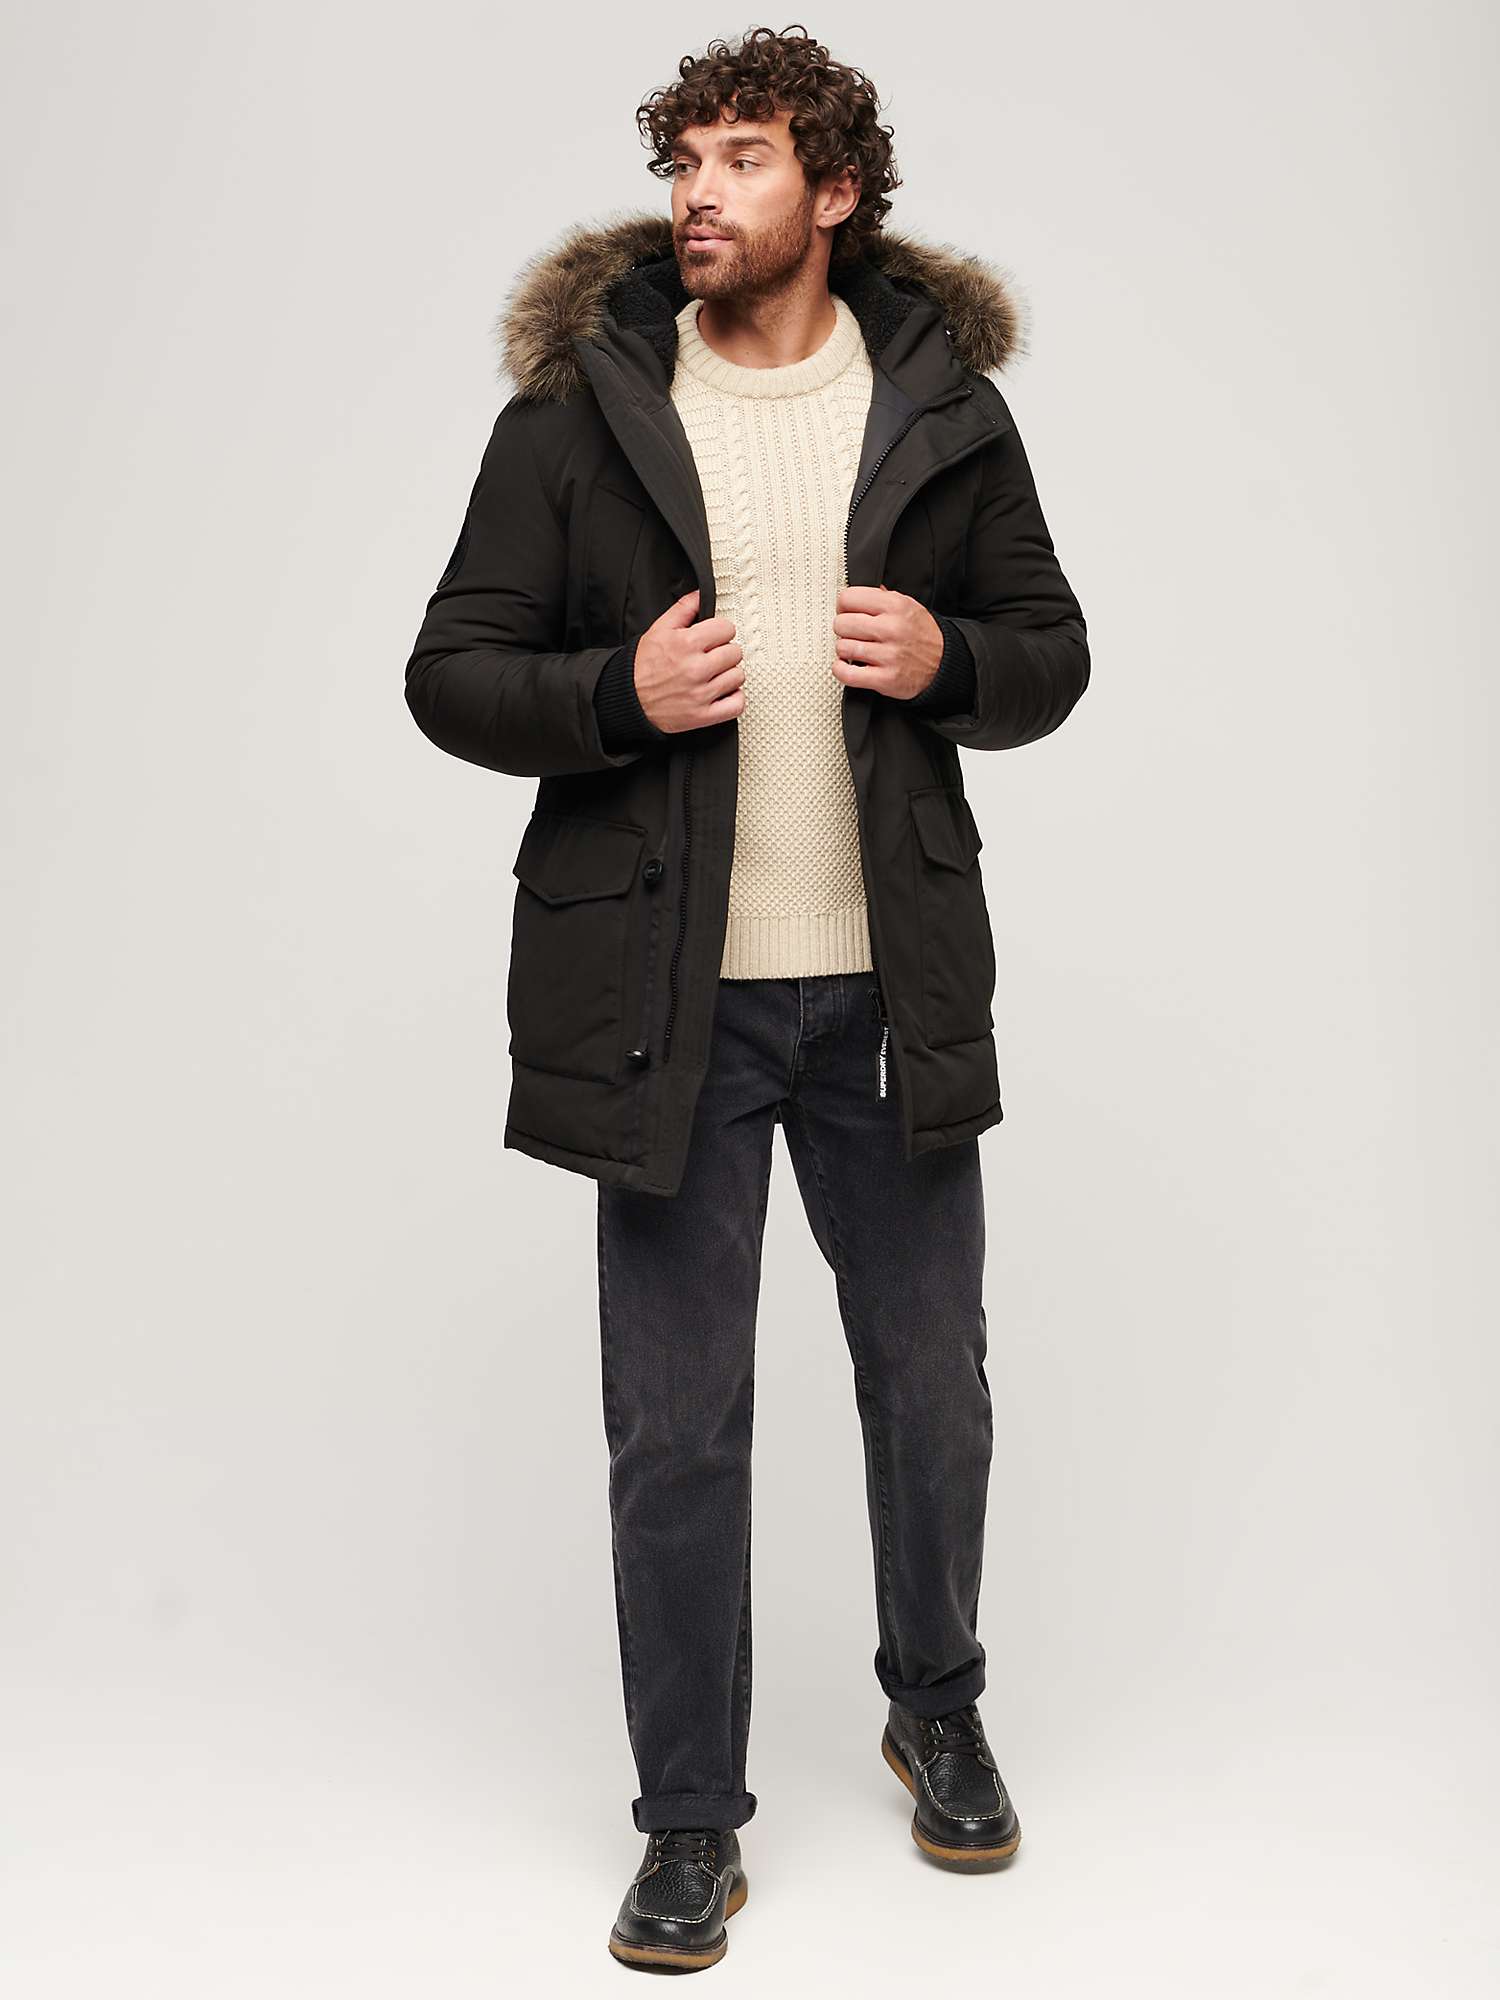 Buy Superdry Everest Faux Fur Hooded Parka Coat, Black Online at johnlewis.com